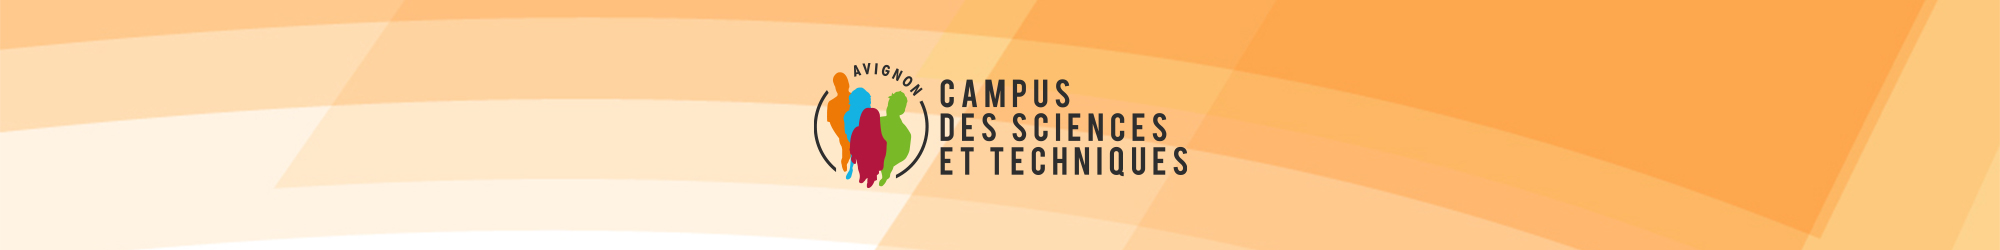 Campus des Sciences et Techniques